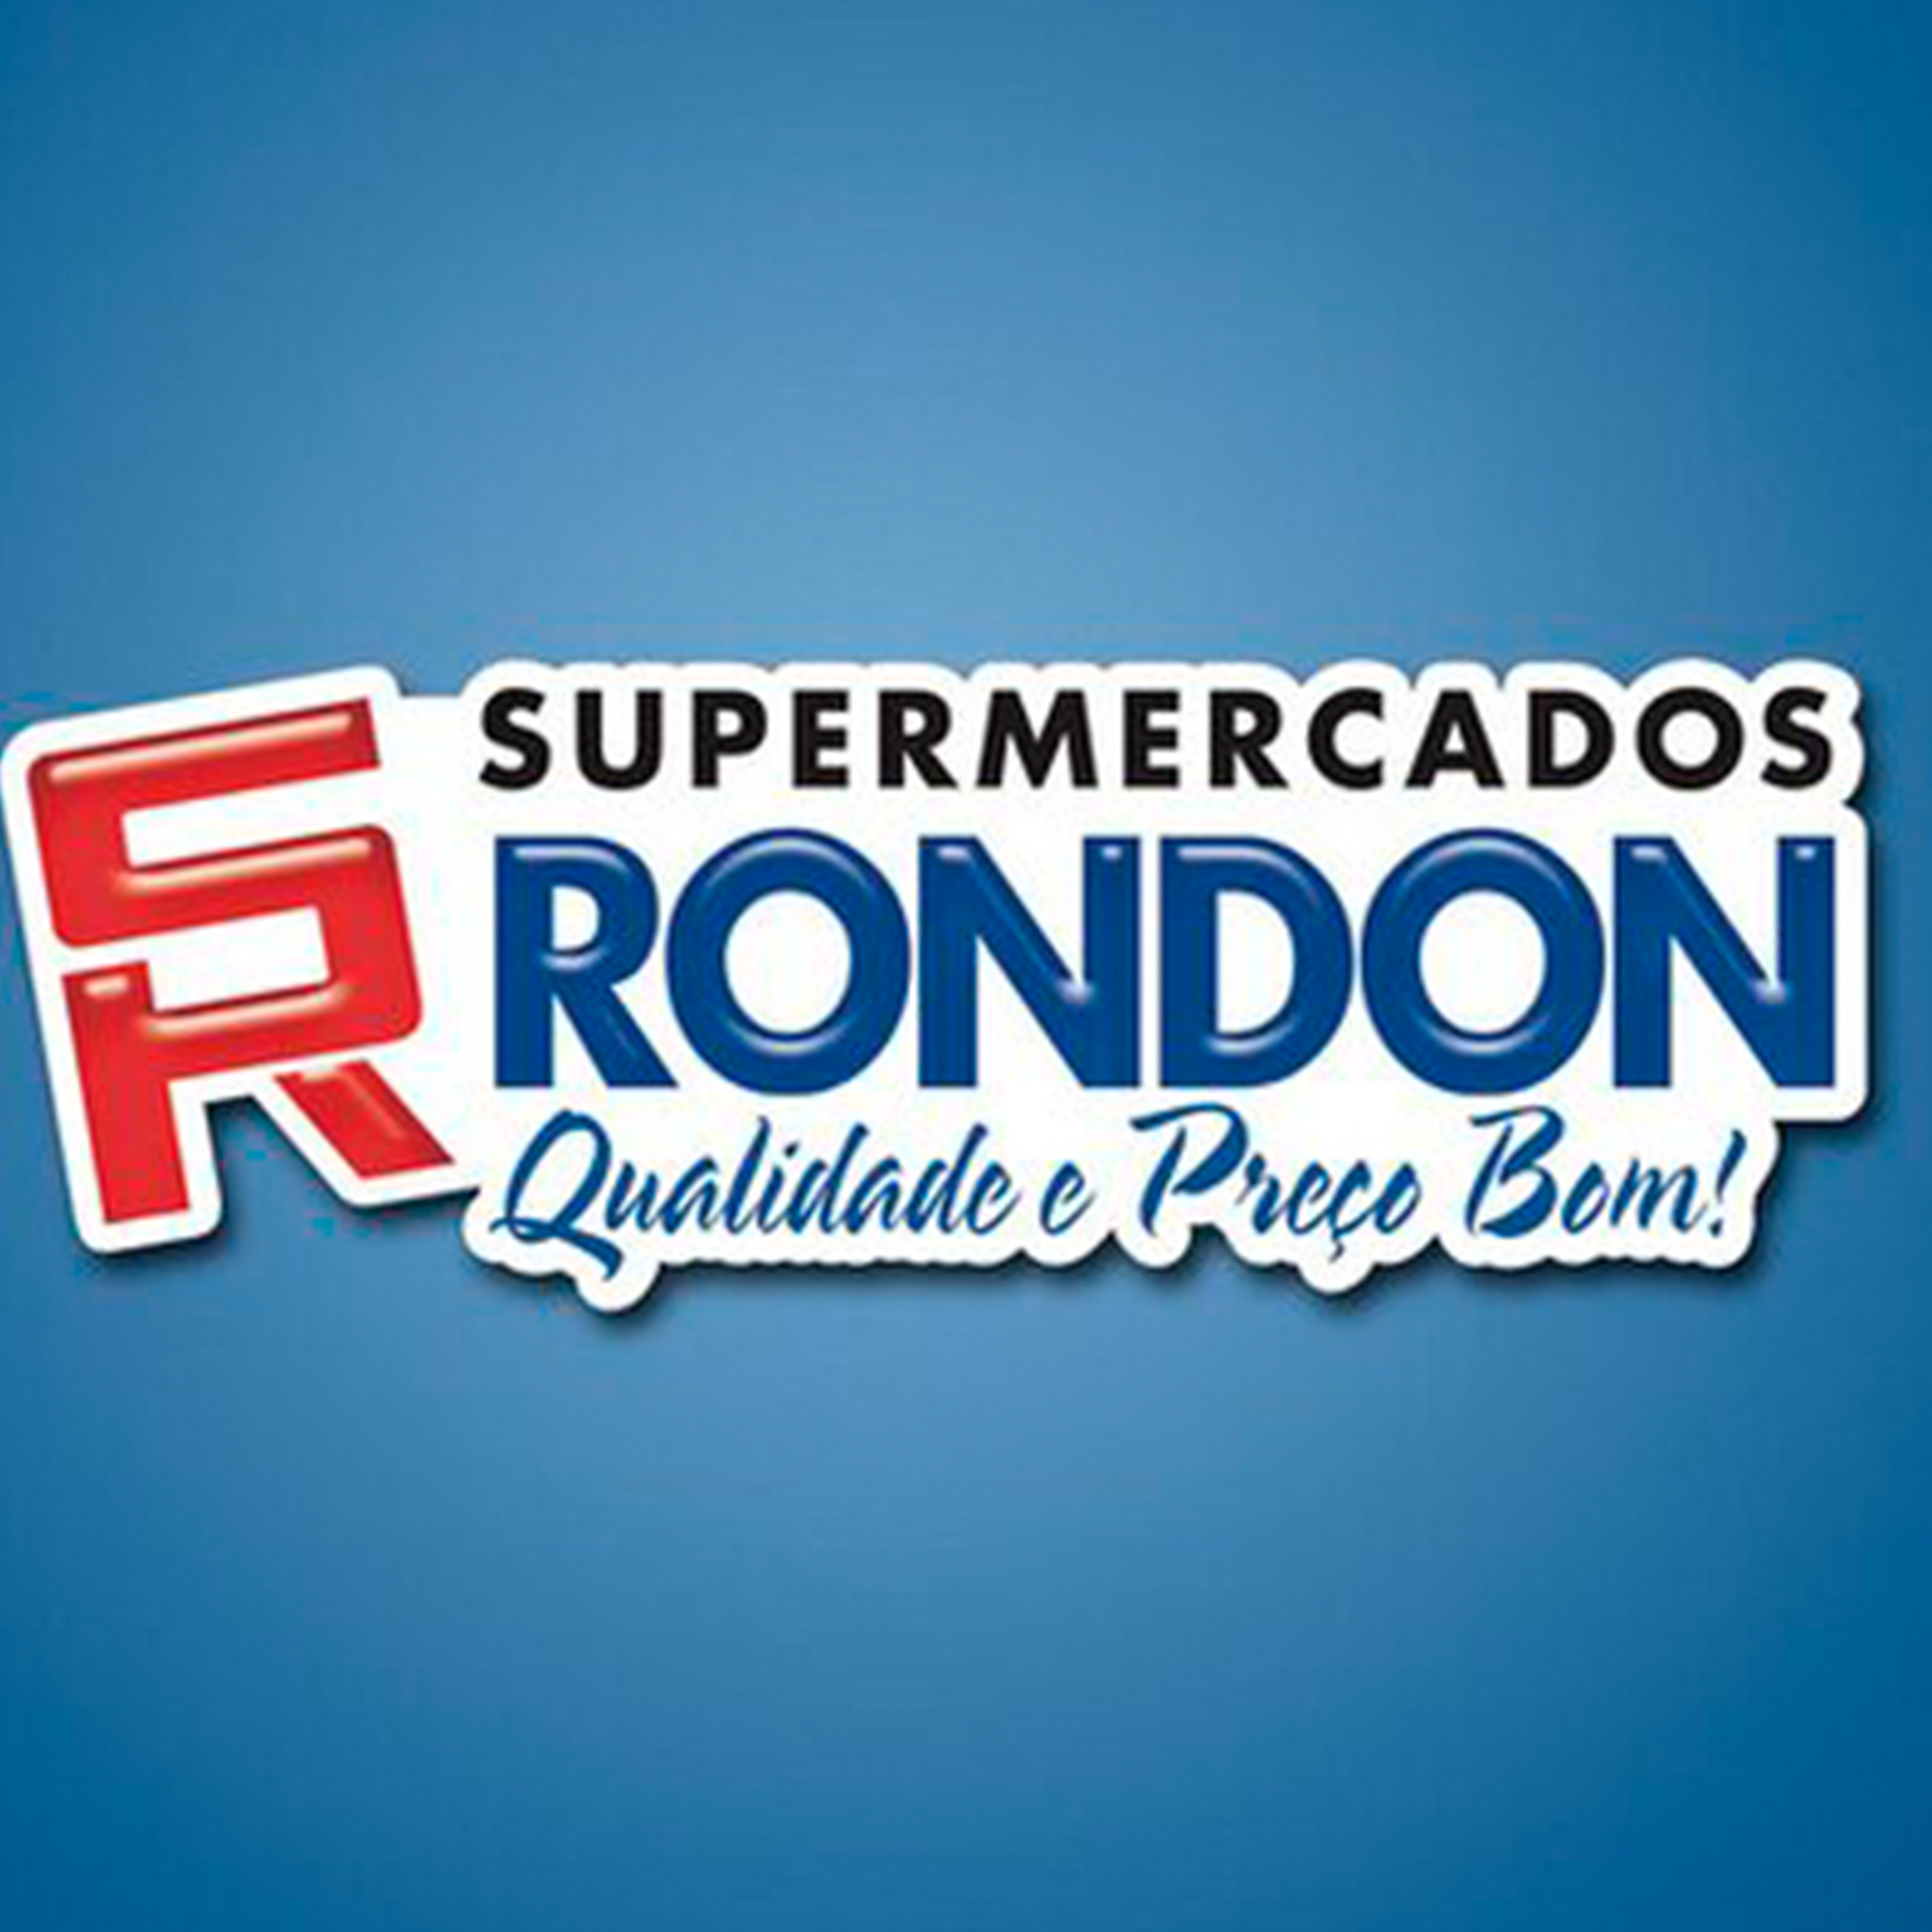 Supermercados Rondon